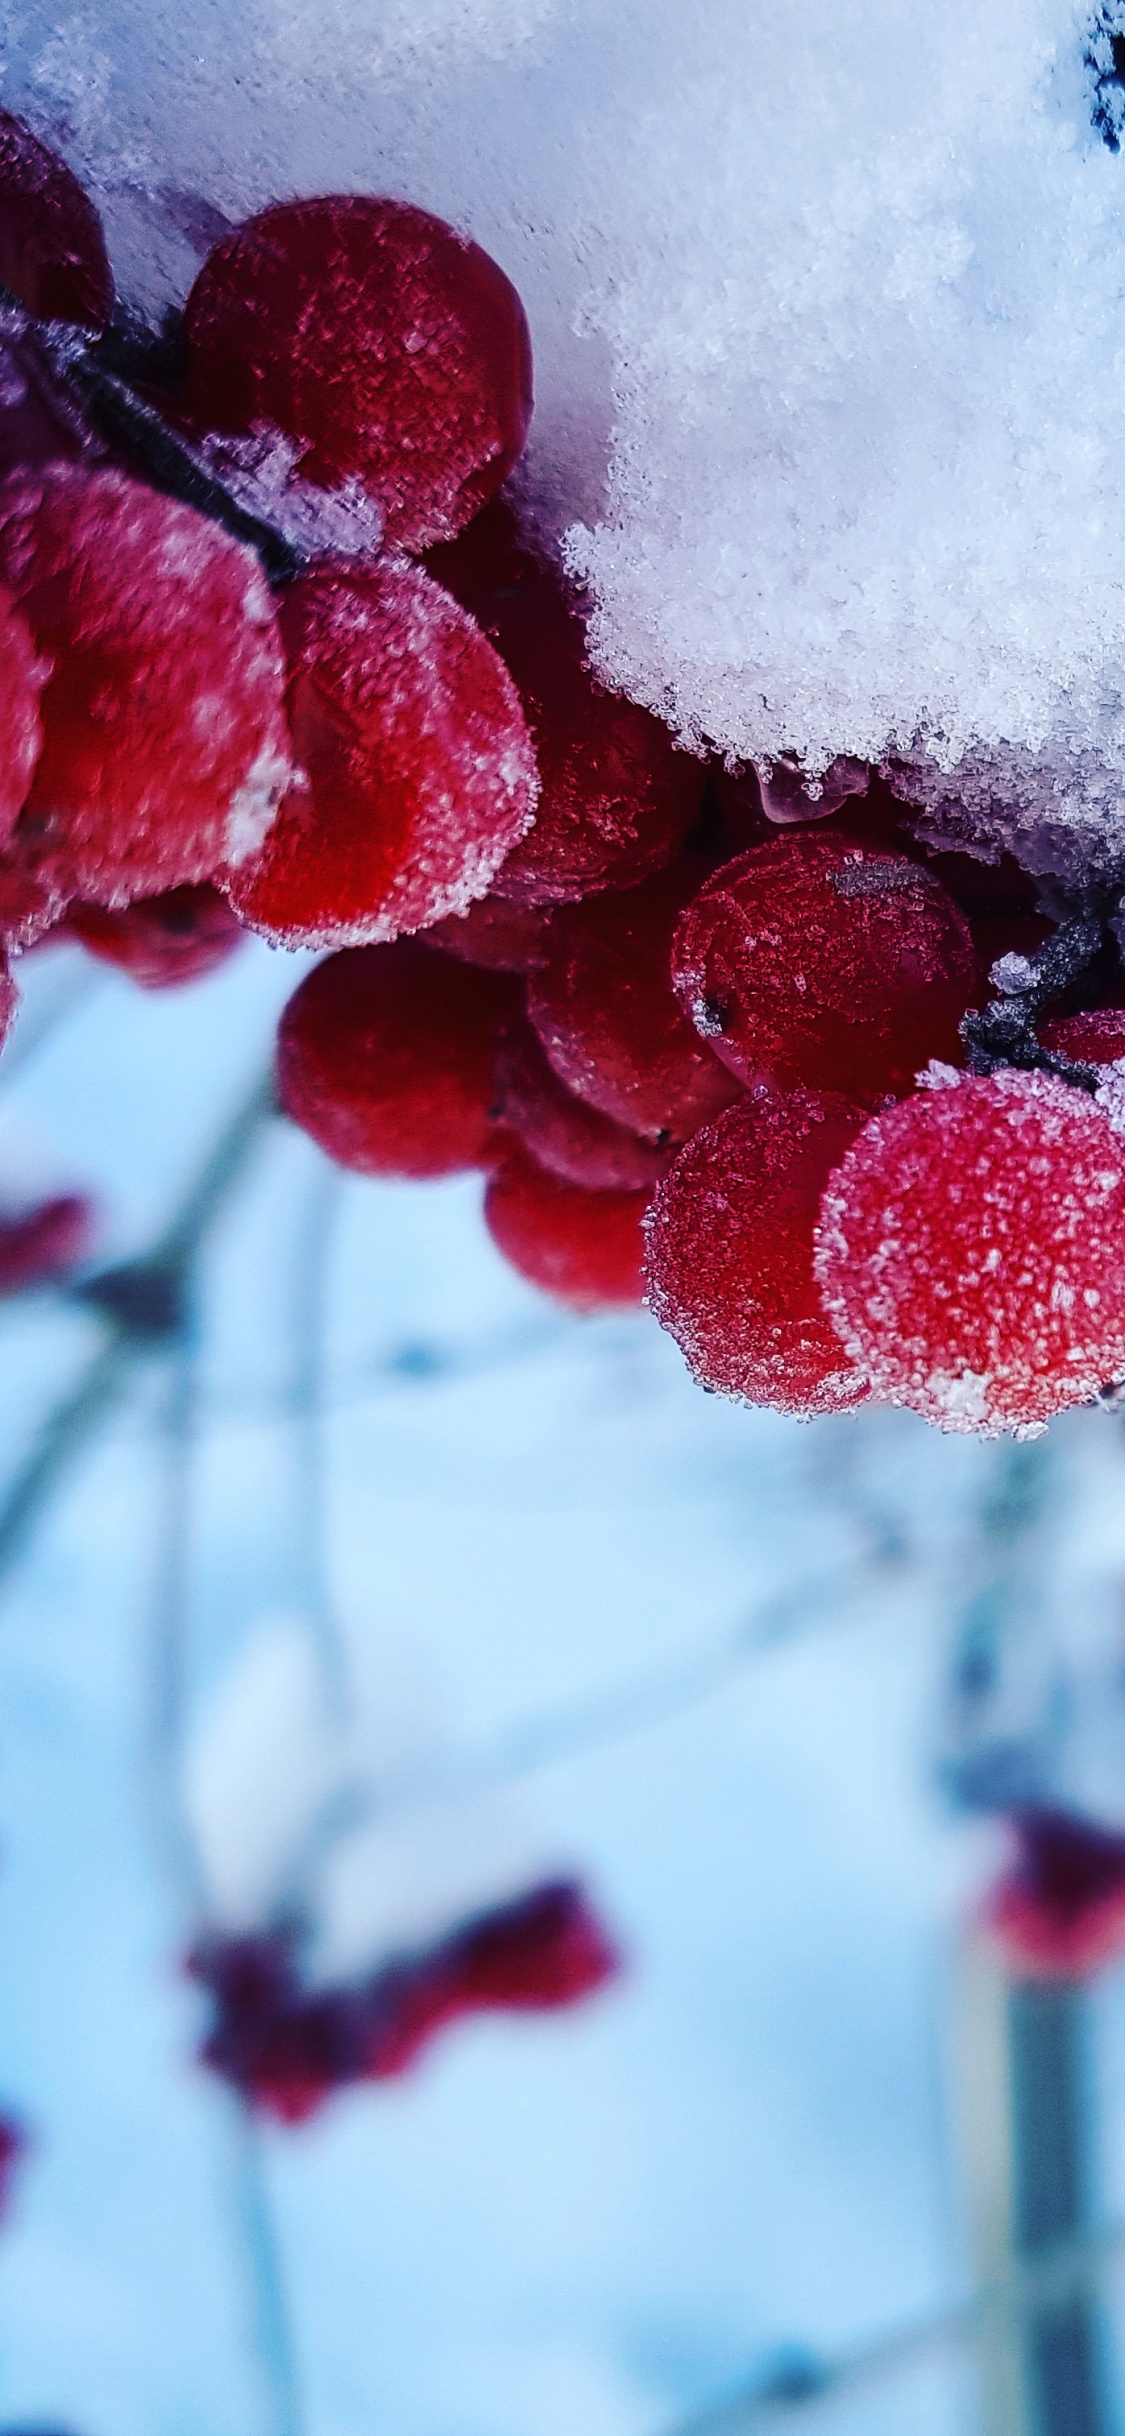 Rote Runde Früchte Mit Schnee Bedeckt. Wallpaper in 1125x2436 Resolution